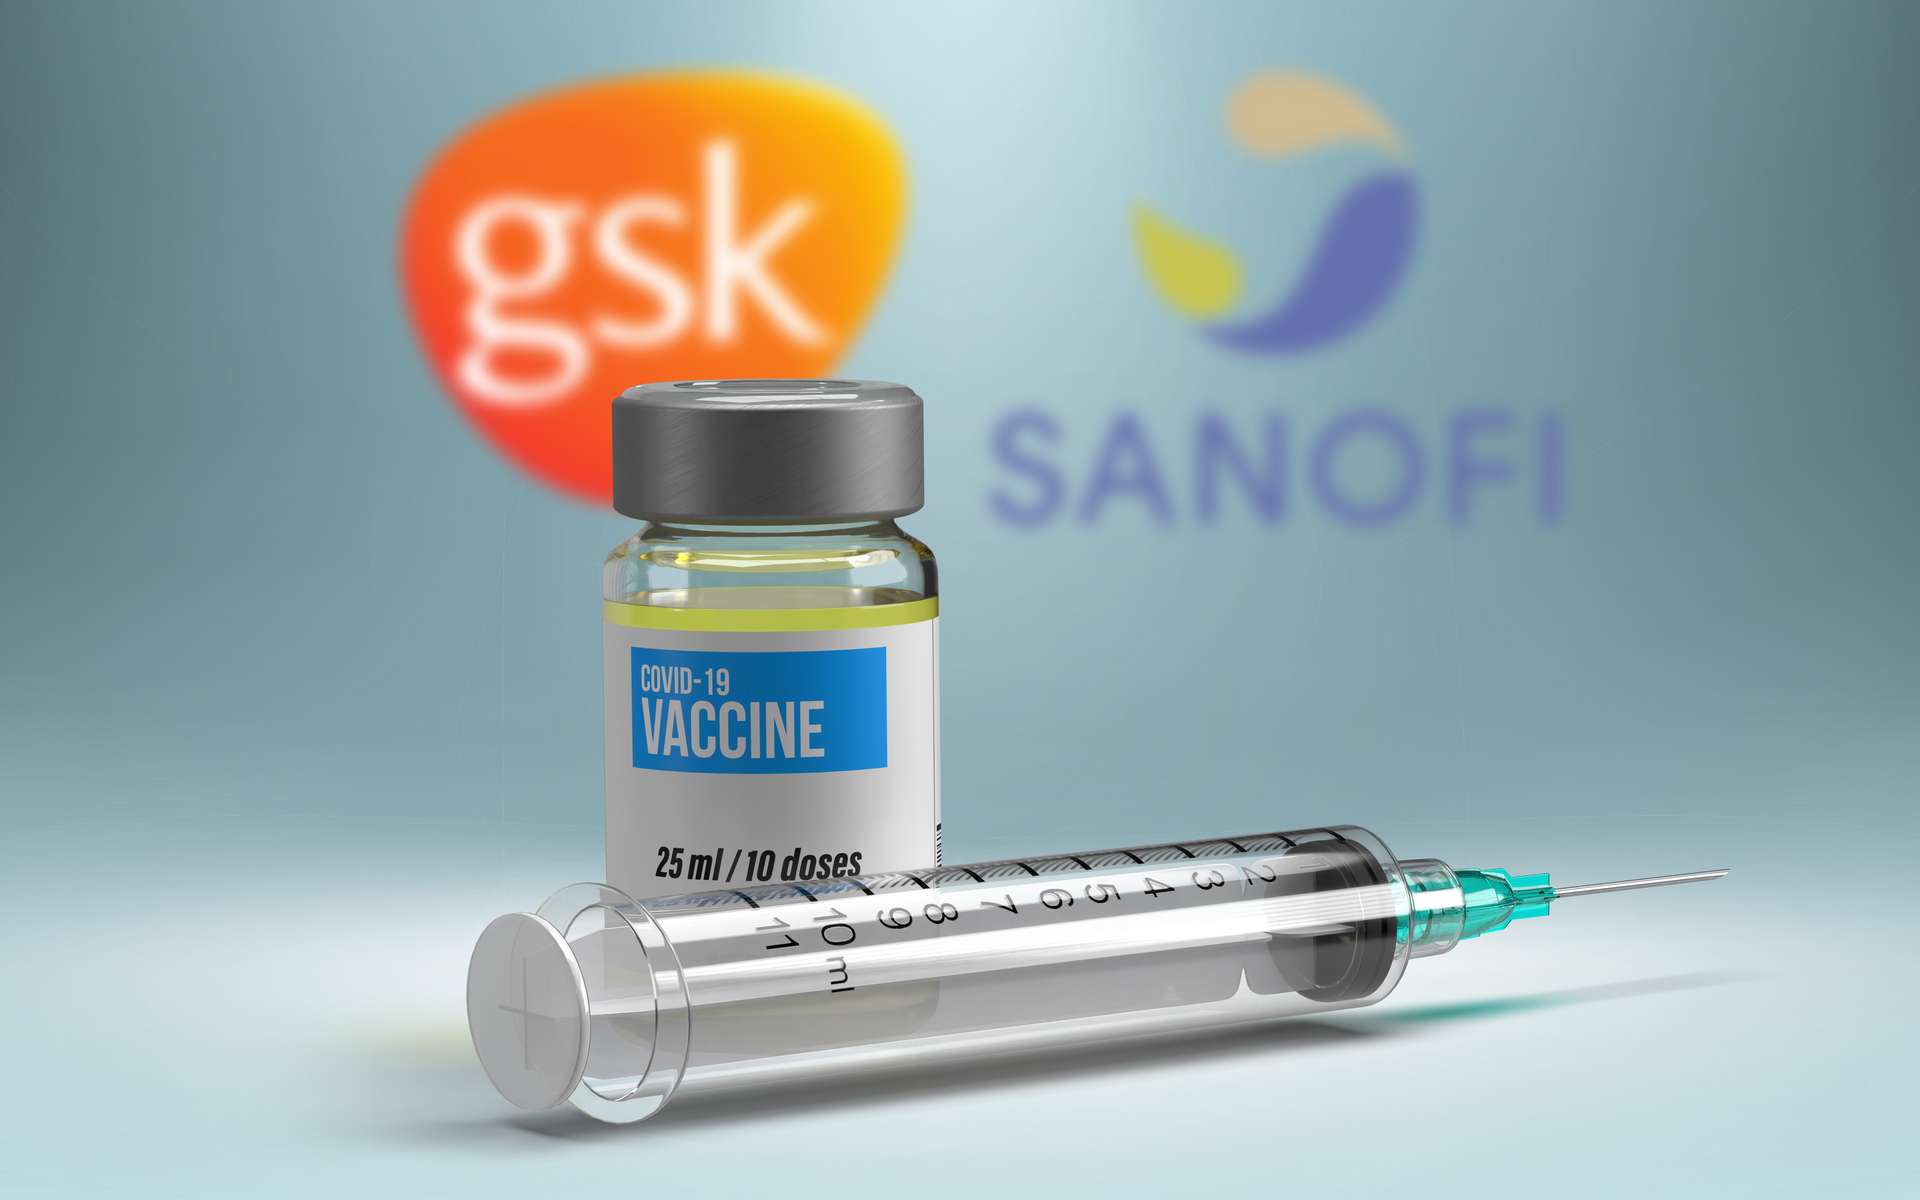 Sanofi arrête le développement de son vaccin à ARN messager